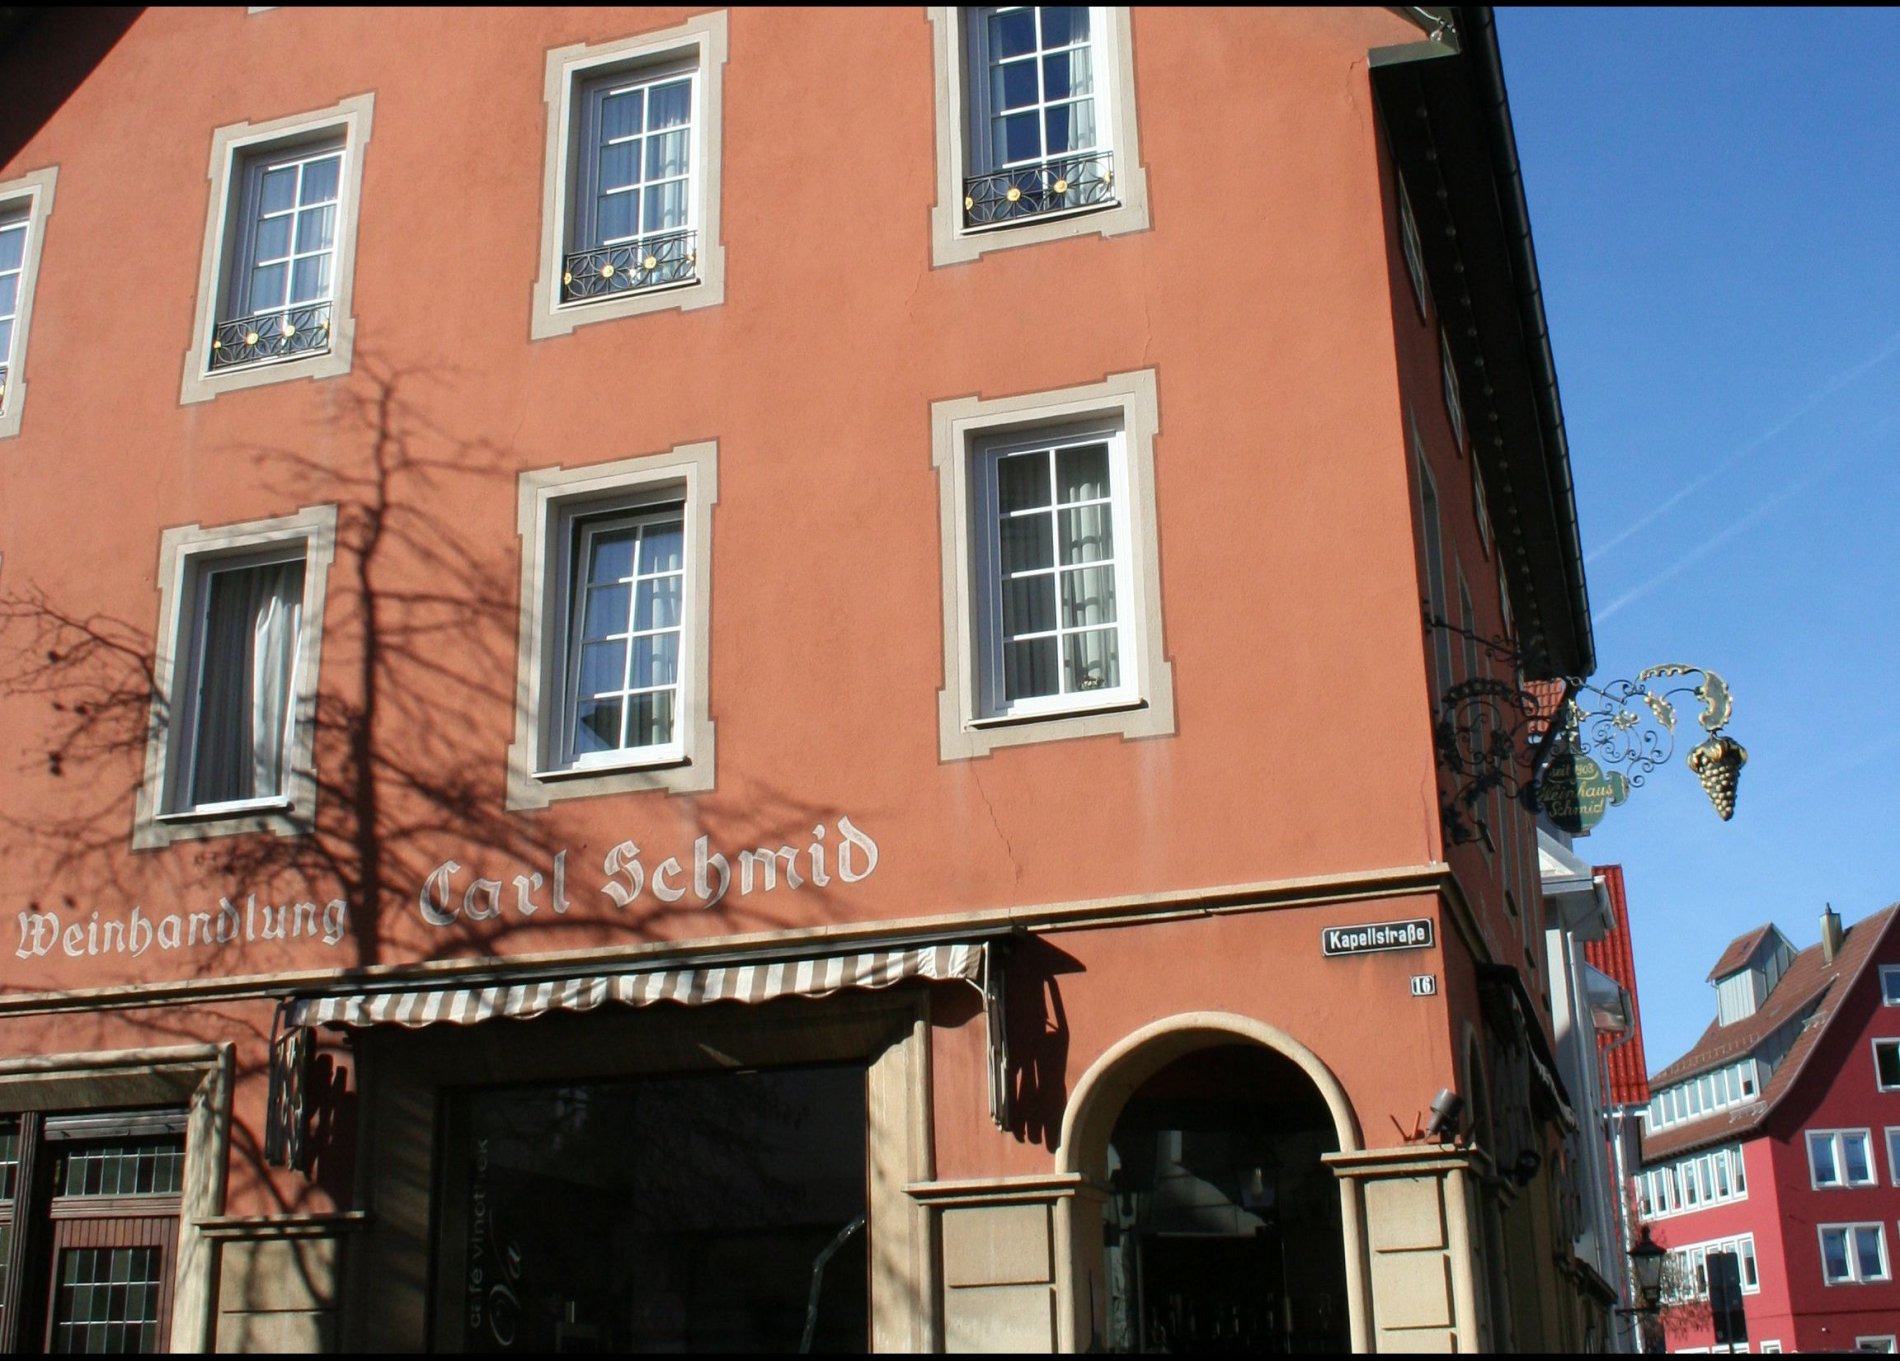 Gastronomie in Albstadt: Bistro-Cafe Ca Va im alten Weinhaus Schmid in Albstadt-Ebingen